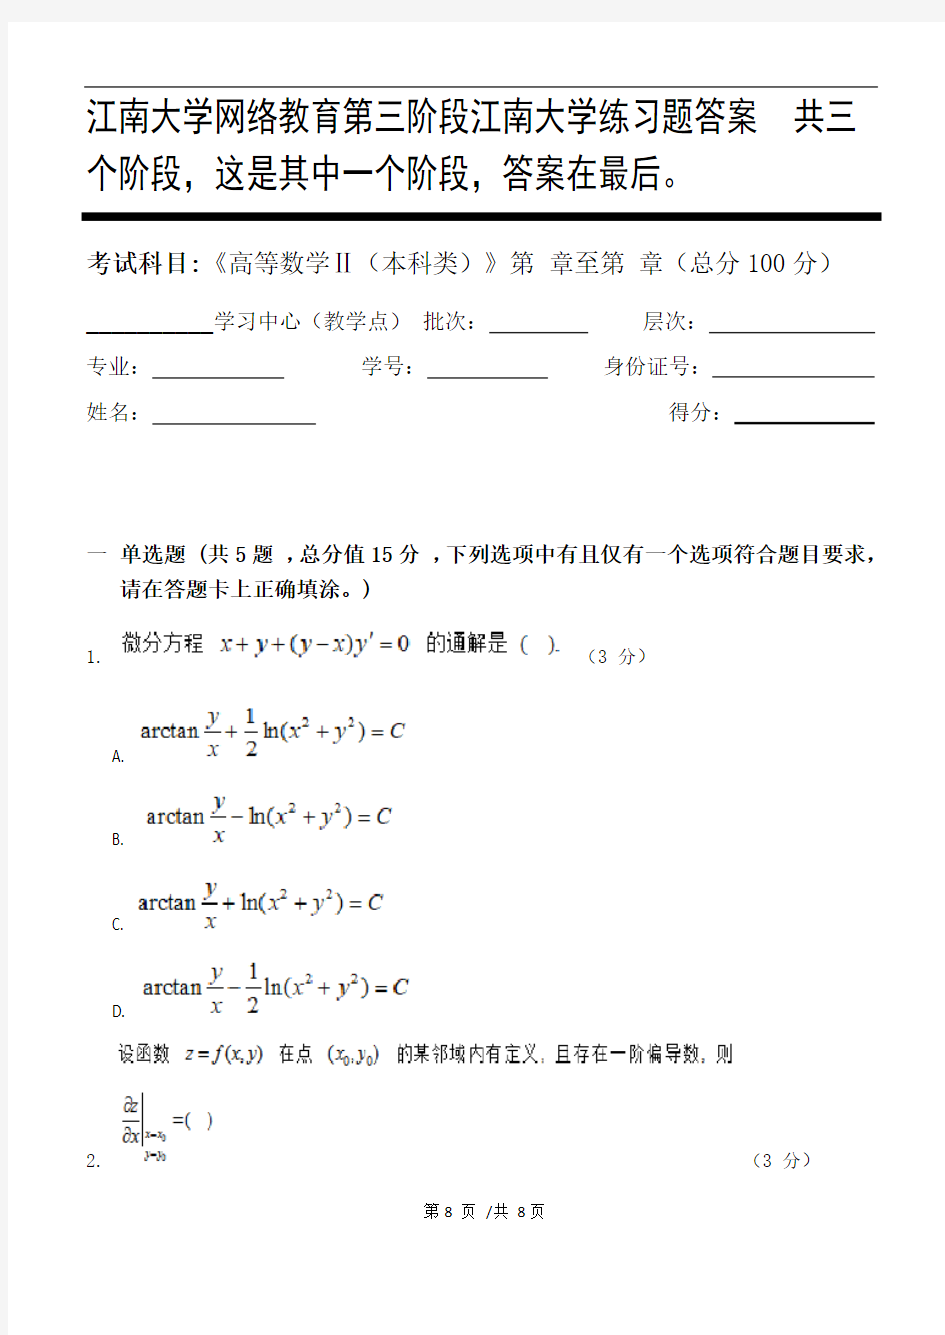 高等数学Ⅱ(本科类)第3阶段江南大学练习题答案  共三个阶段,这是其中一个阶段,答案在最后。